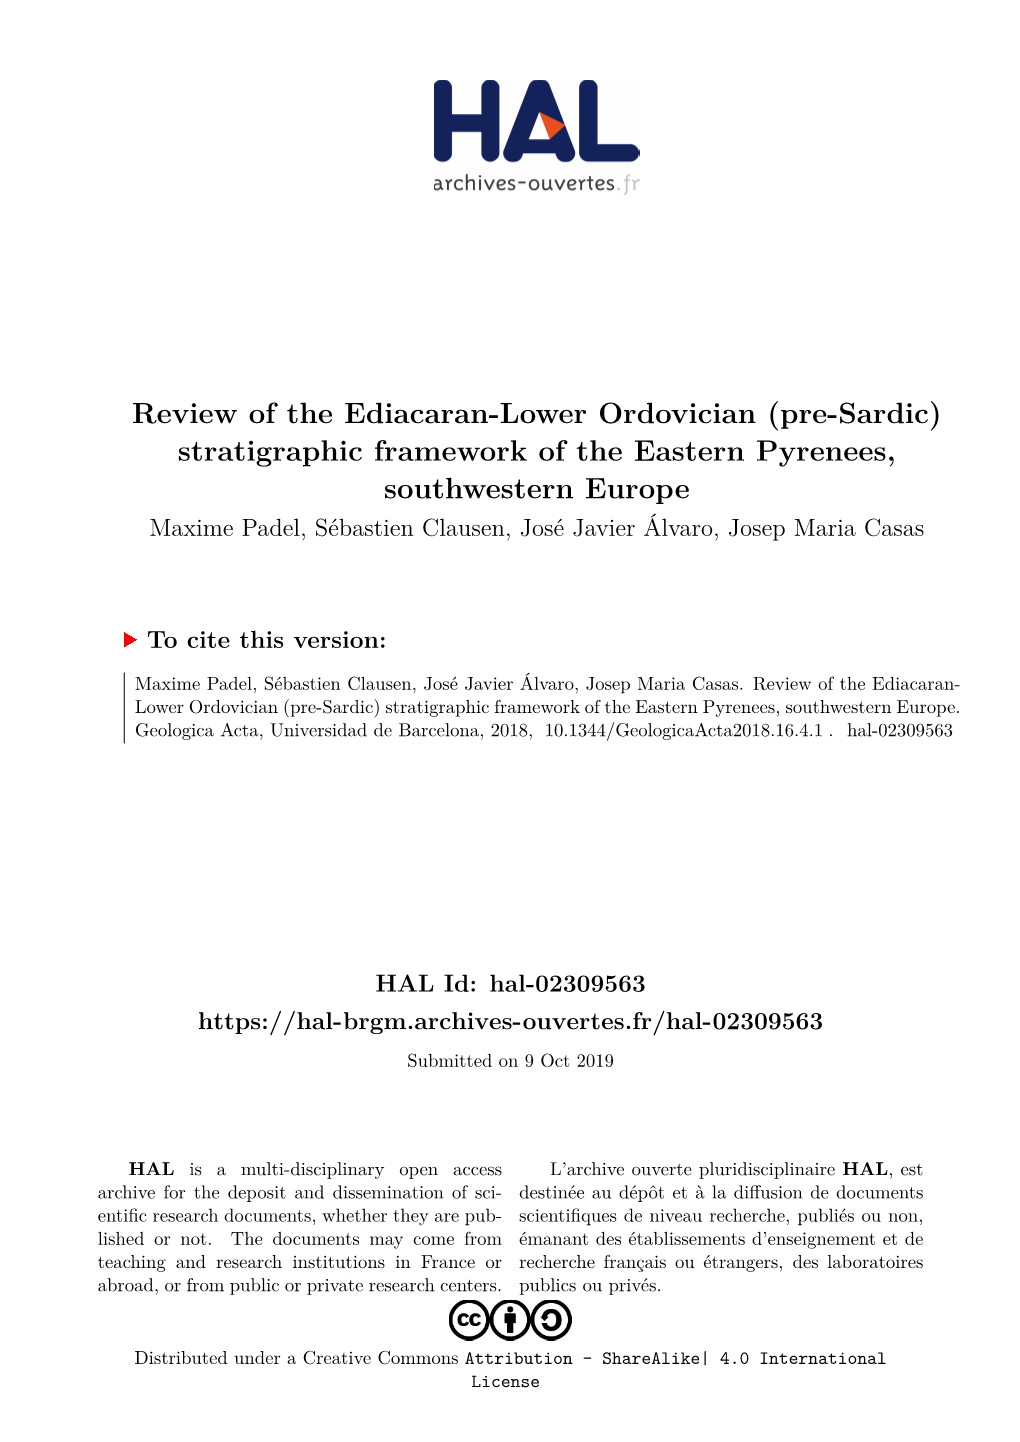 Review of the Ediacaran-Lower Ordovician (Pre-Sardic